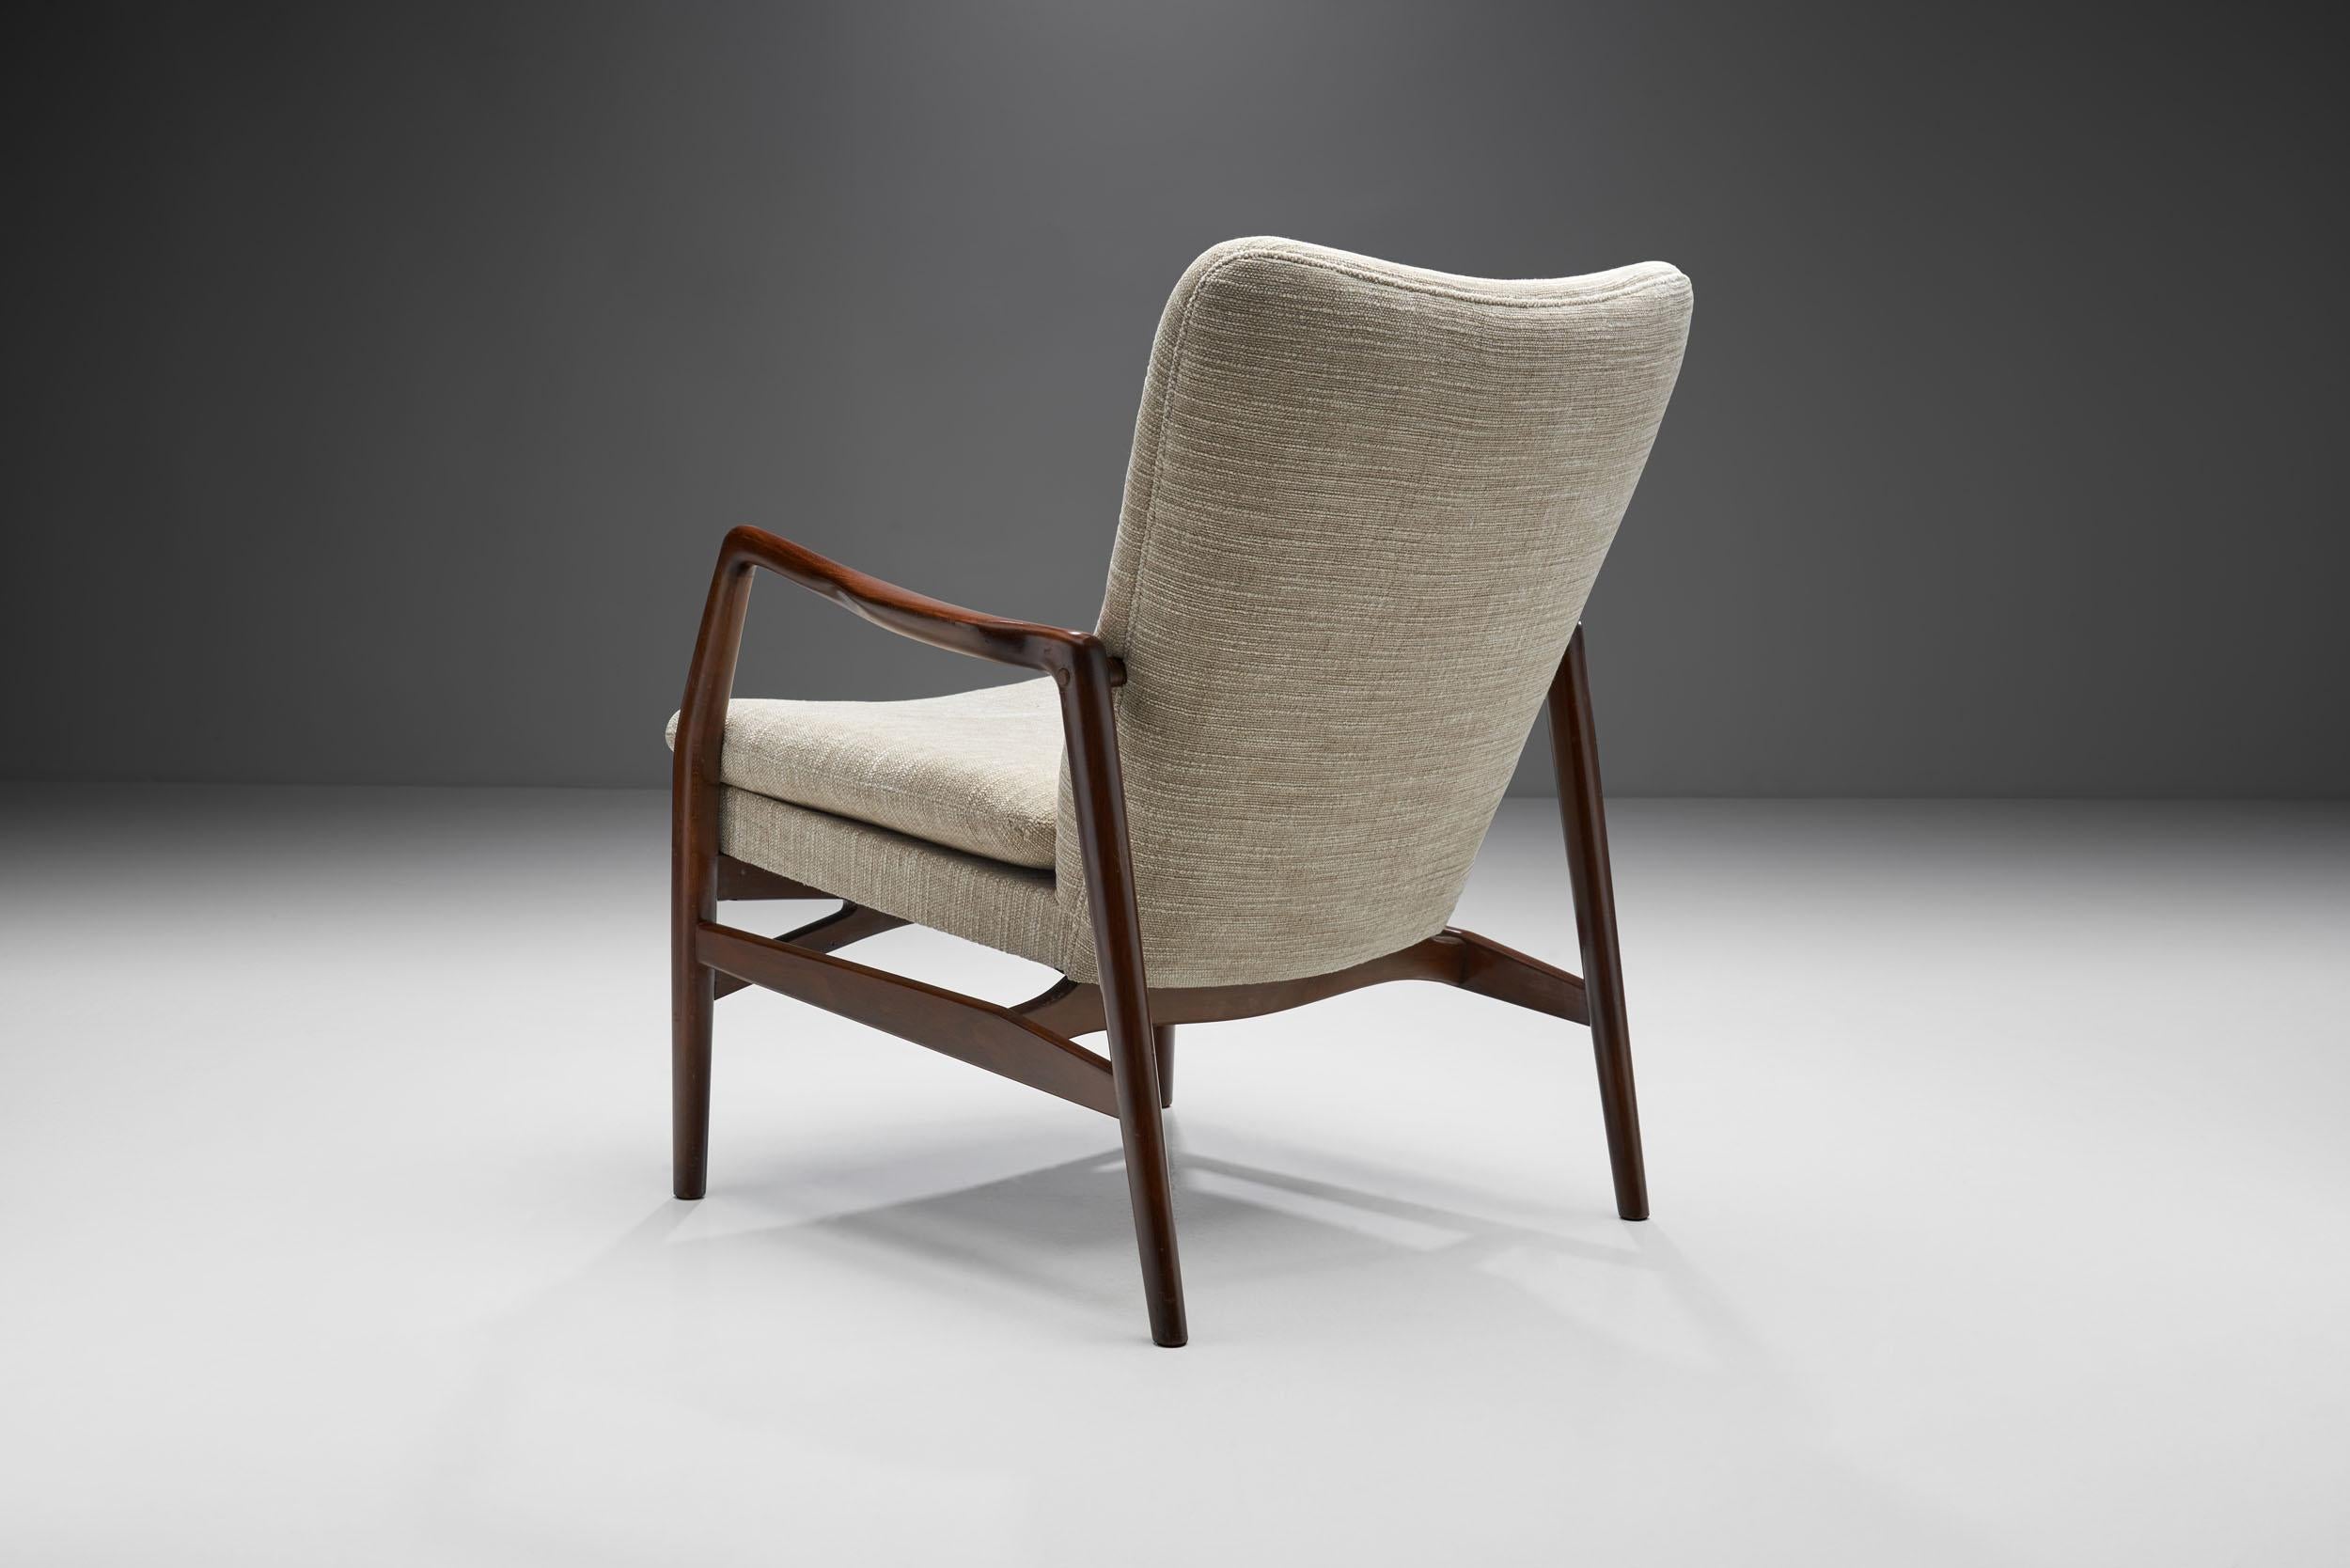 Kurt Olsen “Model 215” Easy Chair for Slagelse Møbelværk, Denmark 1954 In Good Condition For Sale In Utrecht, NL